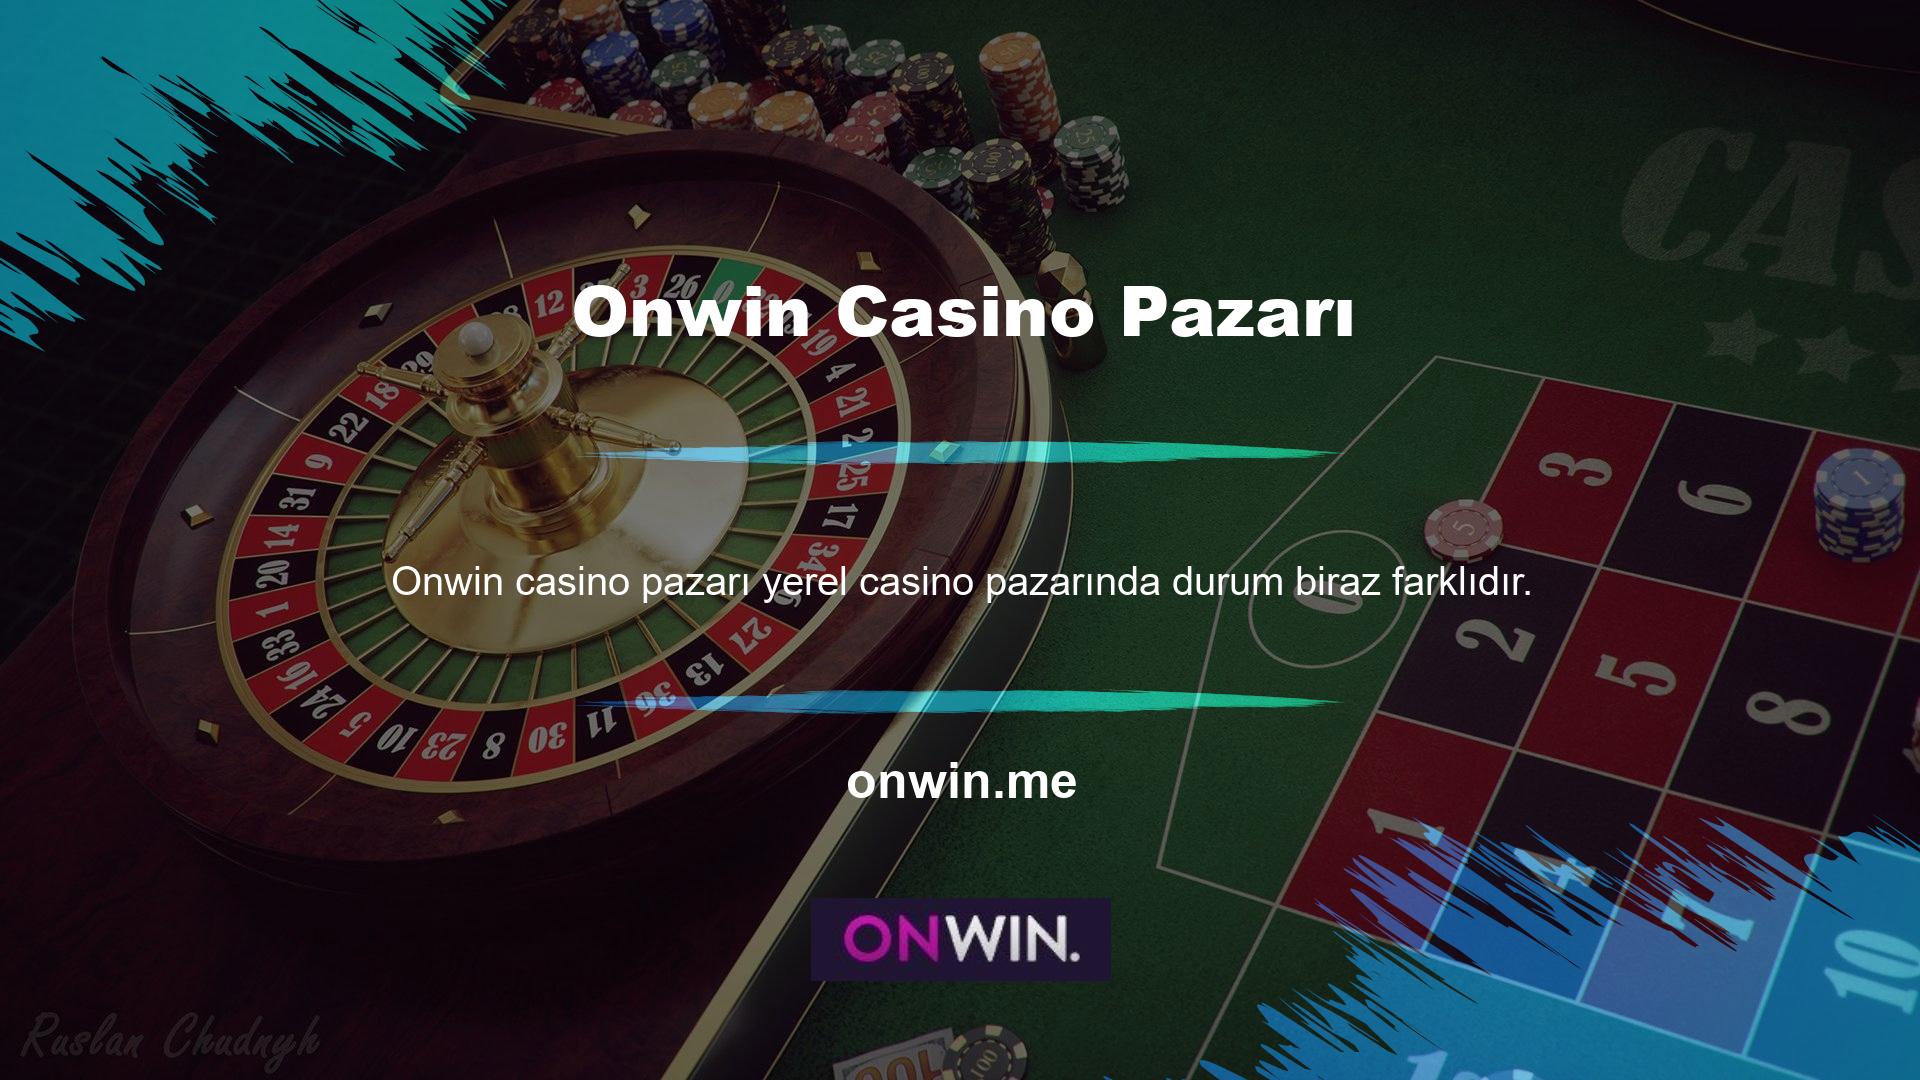 Casino kararları tamamen hükümet tarafından kontrol edilmektedir